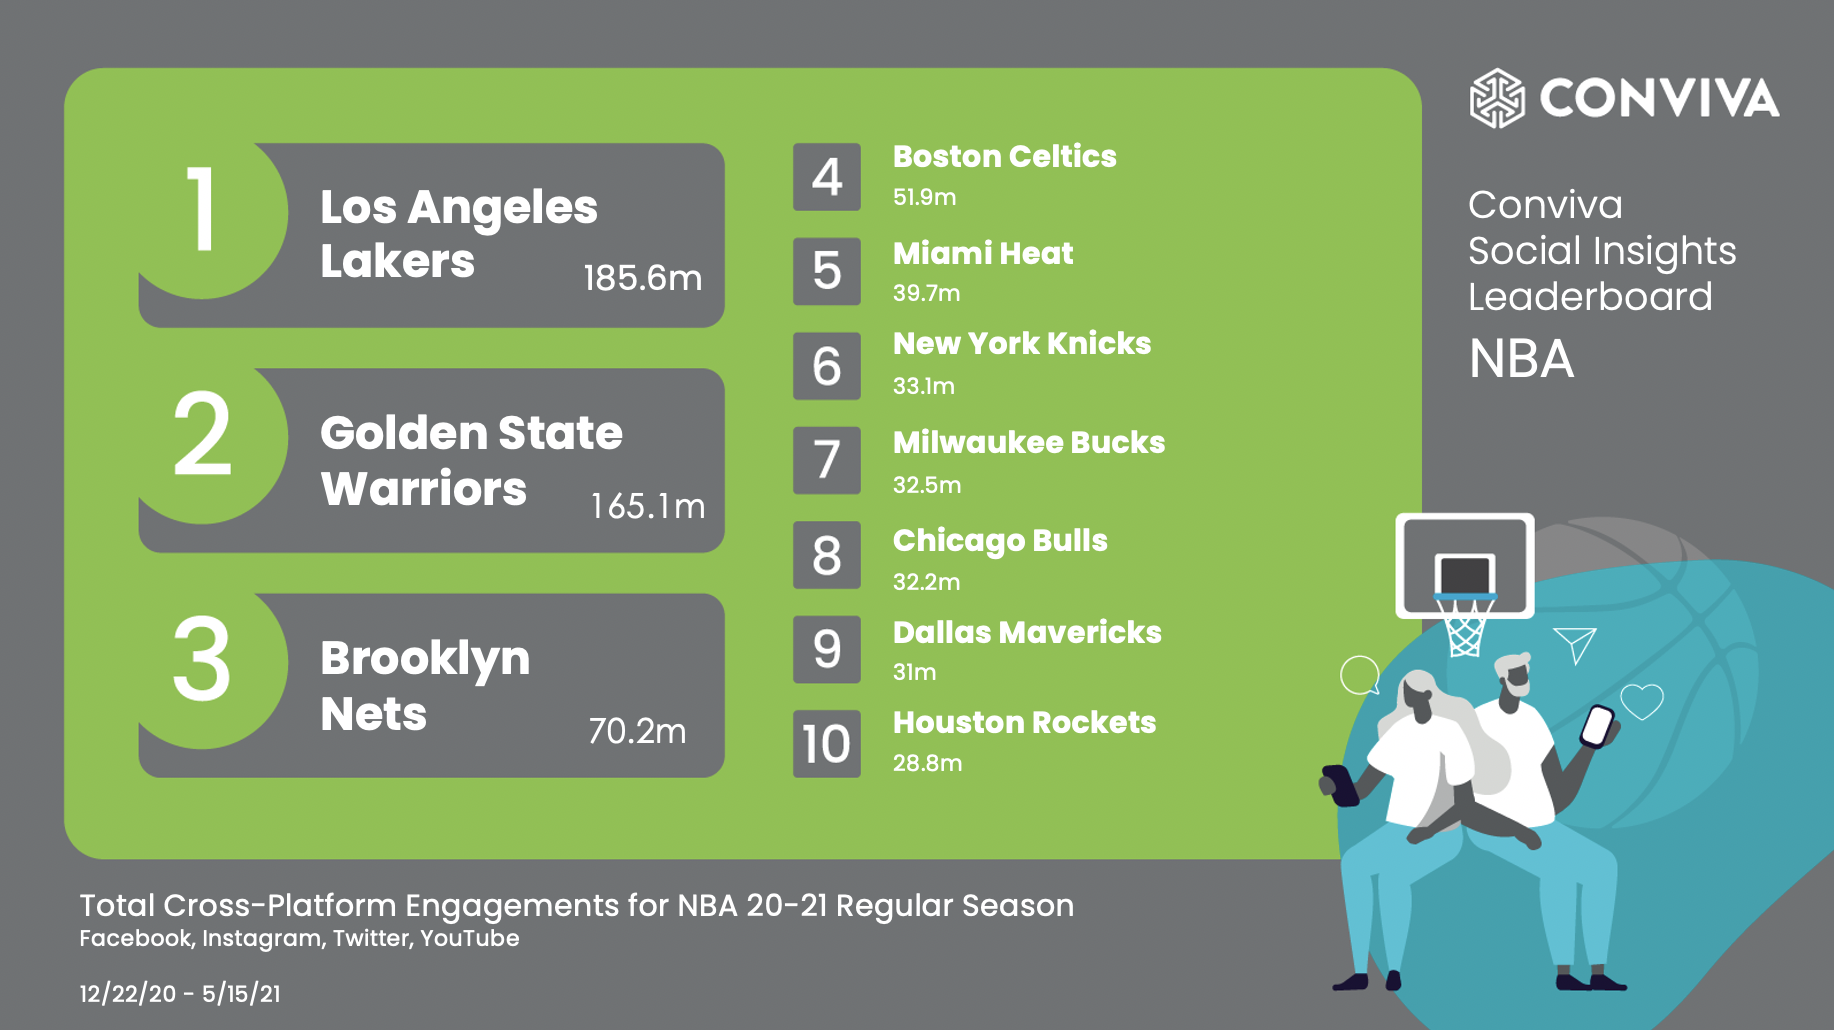 Conviva's Social Insights Leaderboard: Top Cross-Platform Engagements for 2021 NBA Regular Season